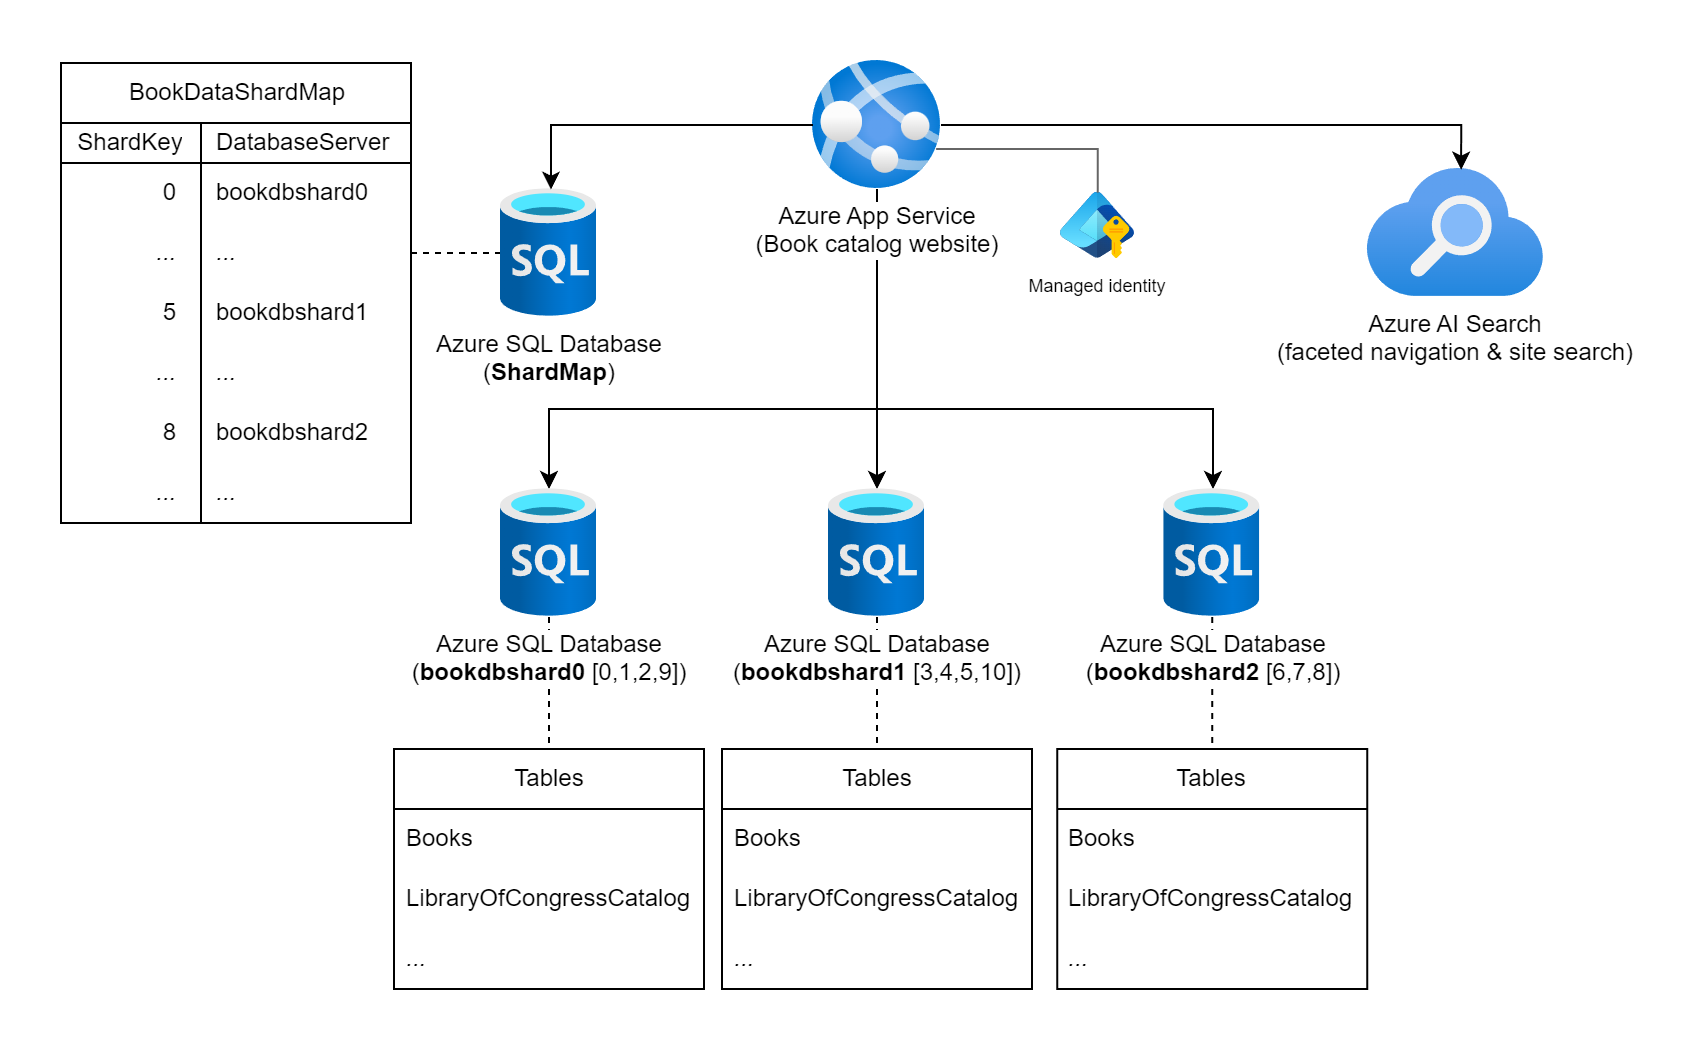 顯示 Azure App 服務、四個 Azure SQL 資料庫 和一個 Azure AI 搜尋的圖表。